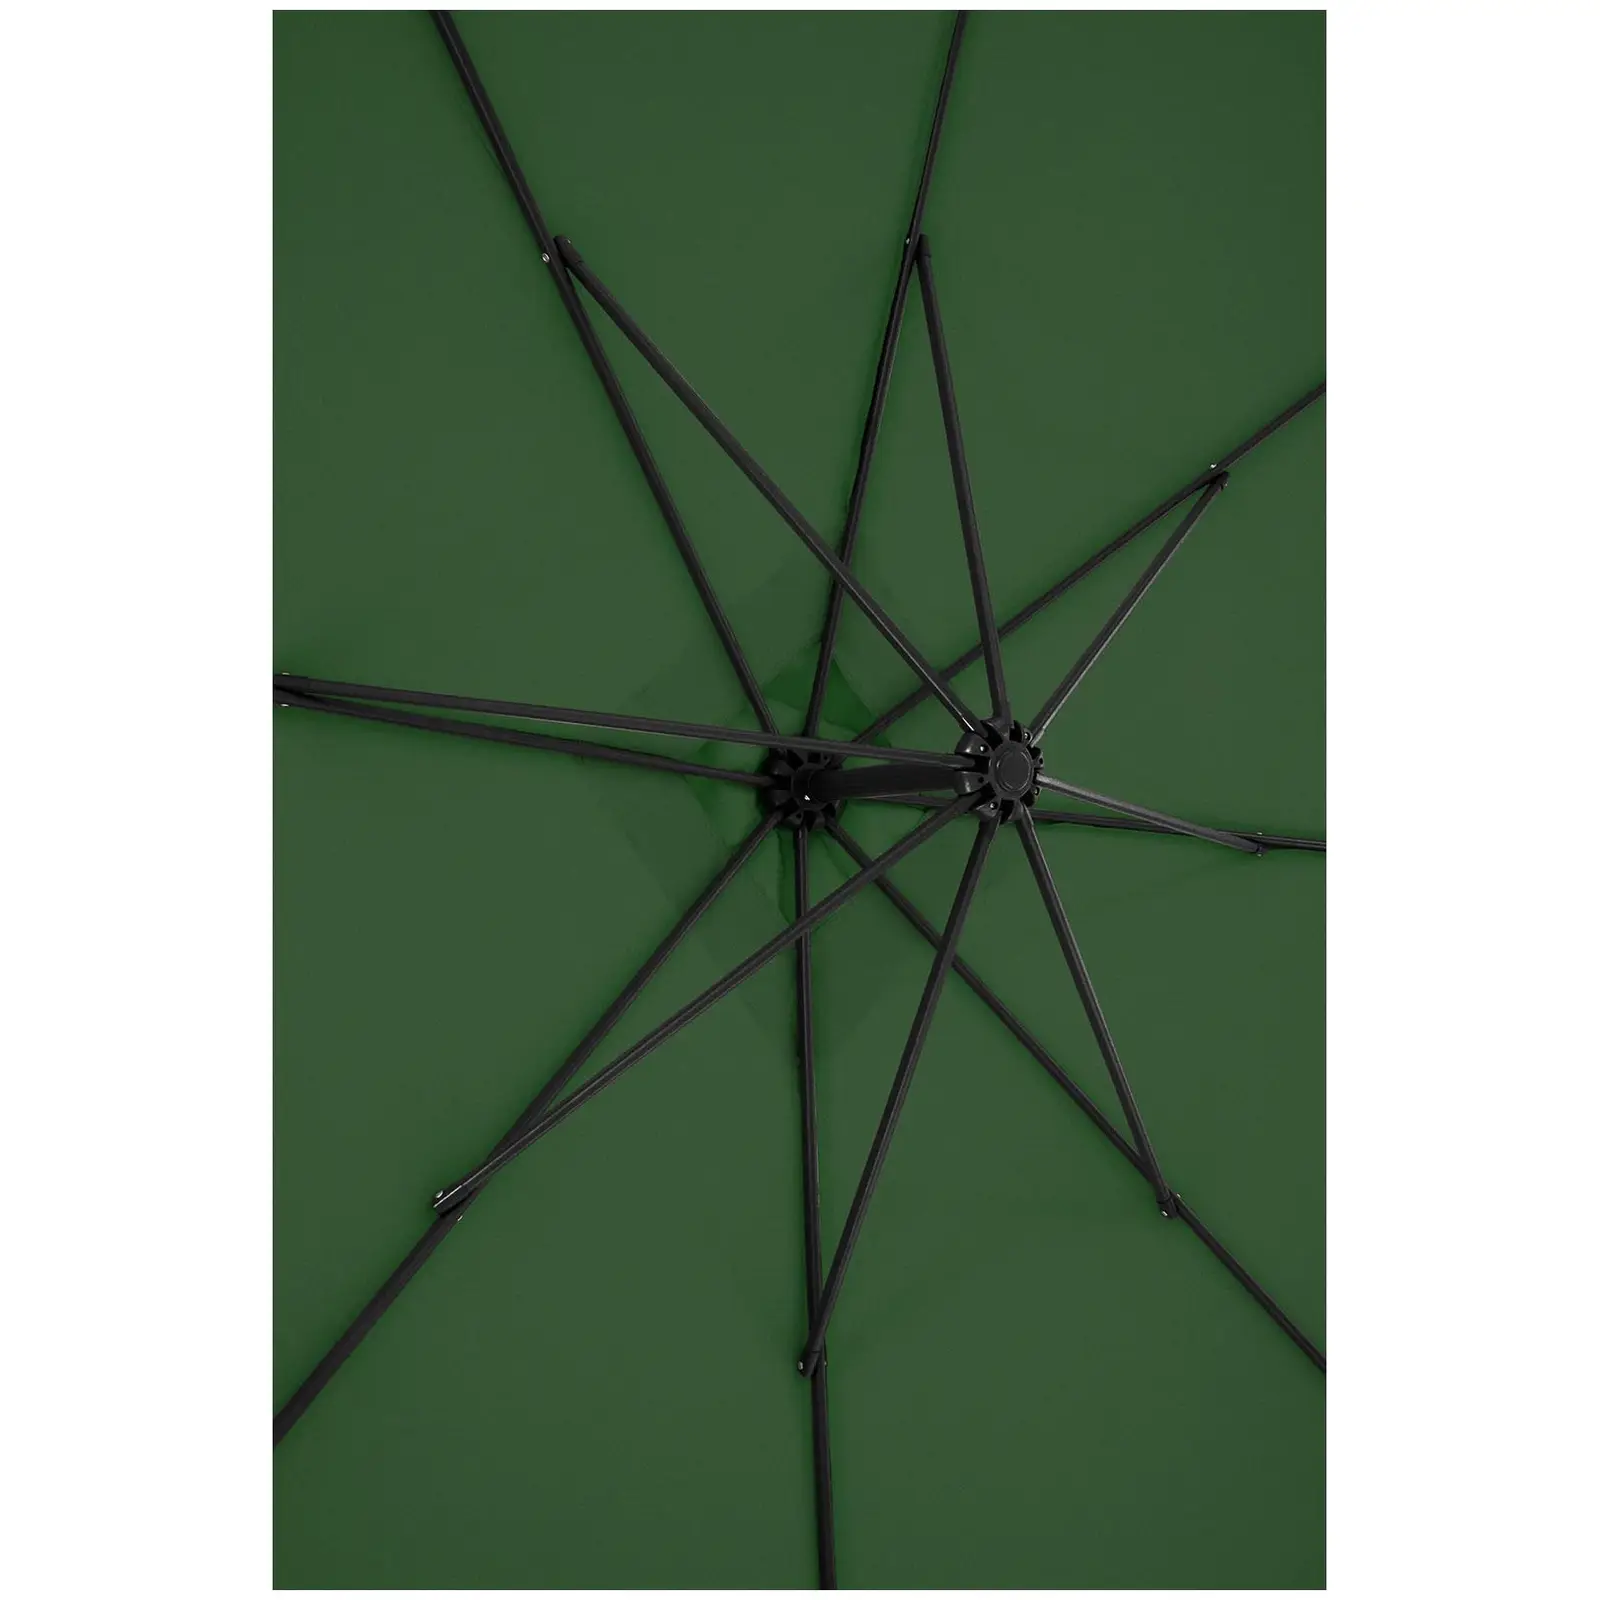 B-Ware Ampelschirm - grün - rechteckig - 250 x 250 cm - neigbar